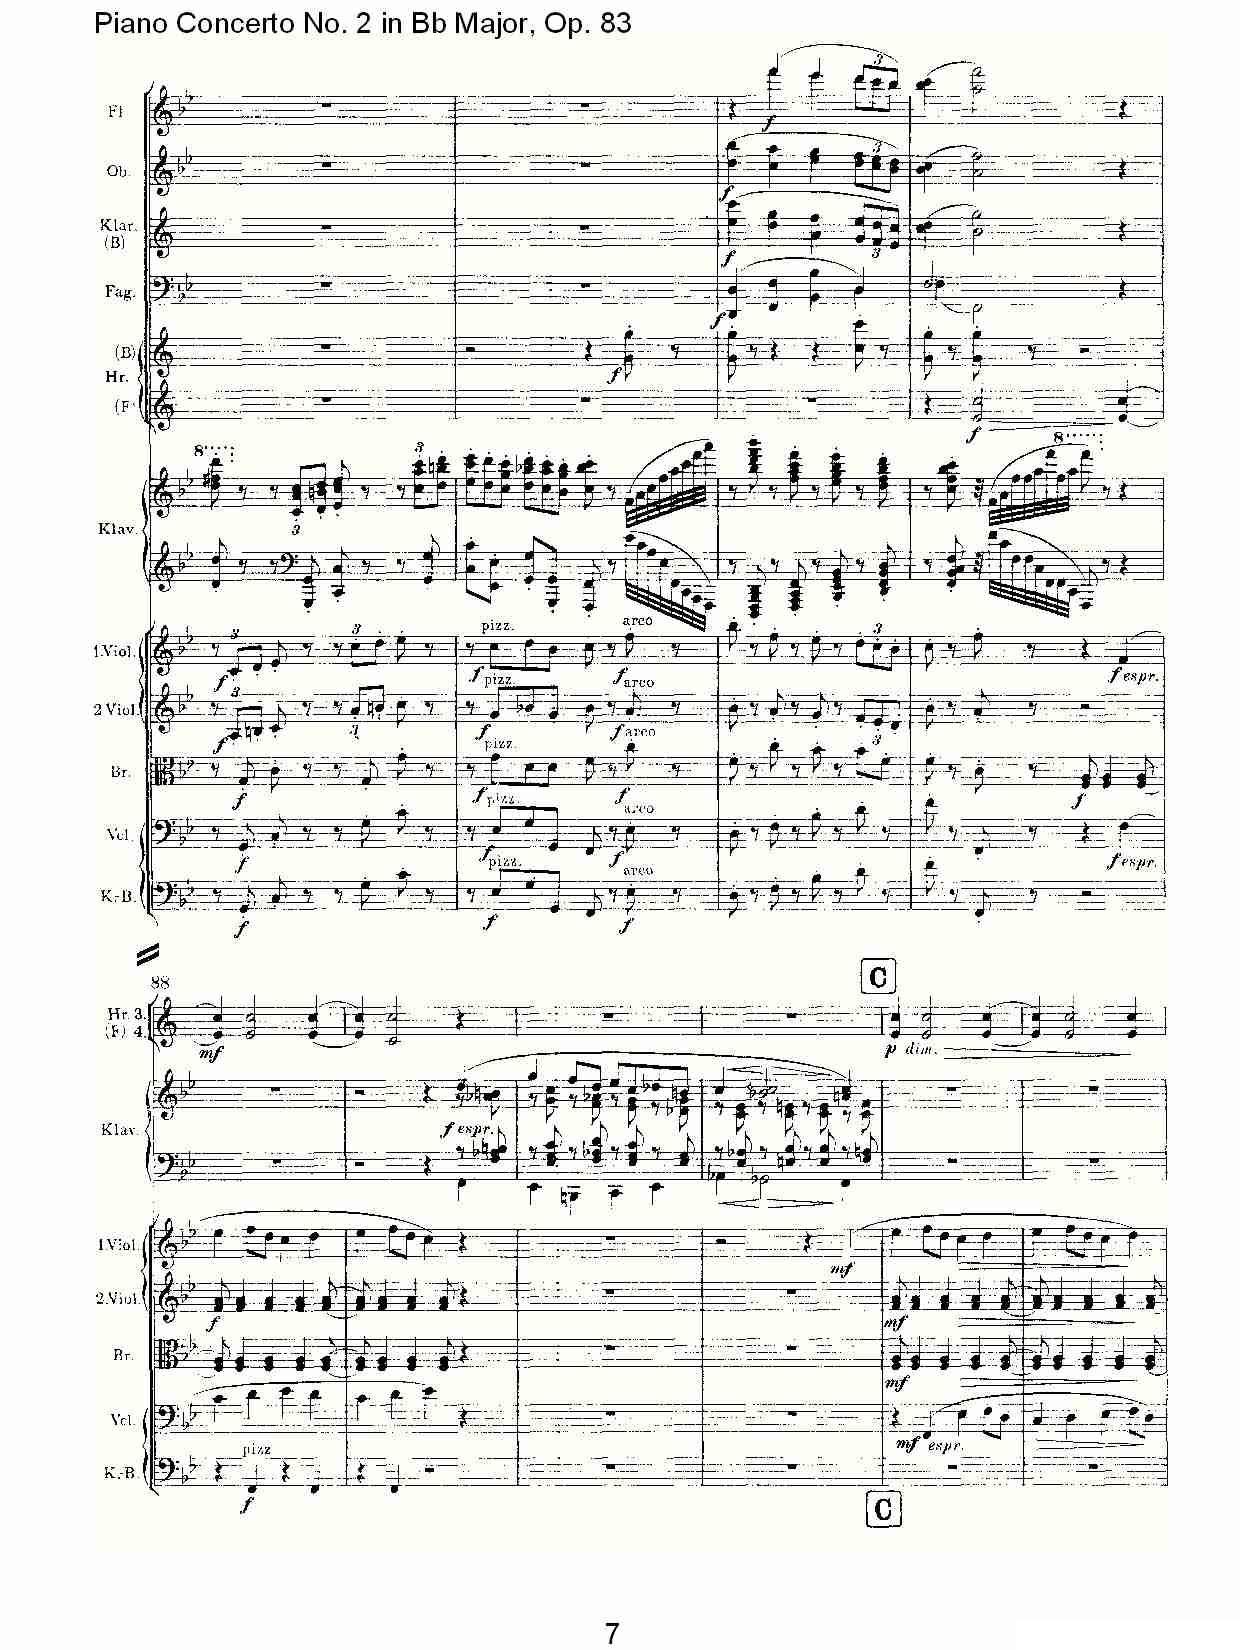 Bb大调钢琴第二协奏曲, Op.83第一乐章（一）钢琴曲谱（图7）